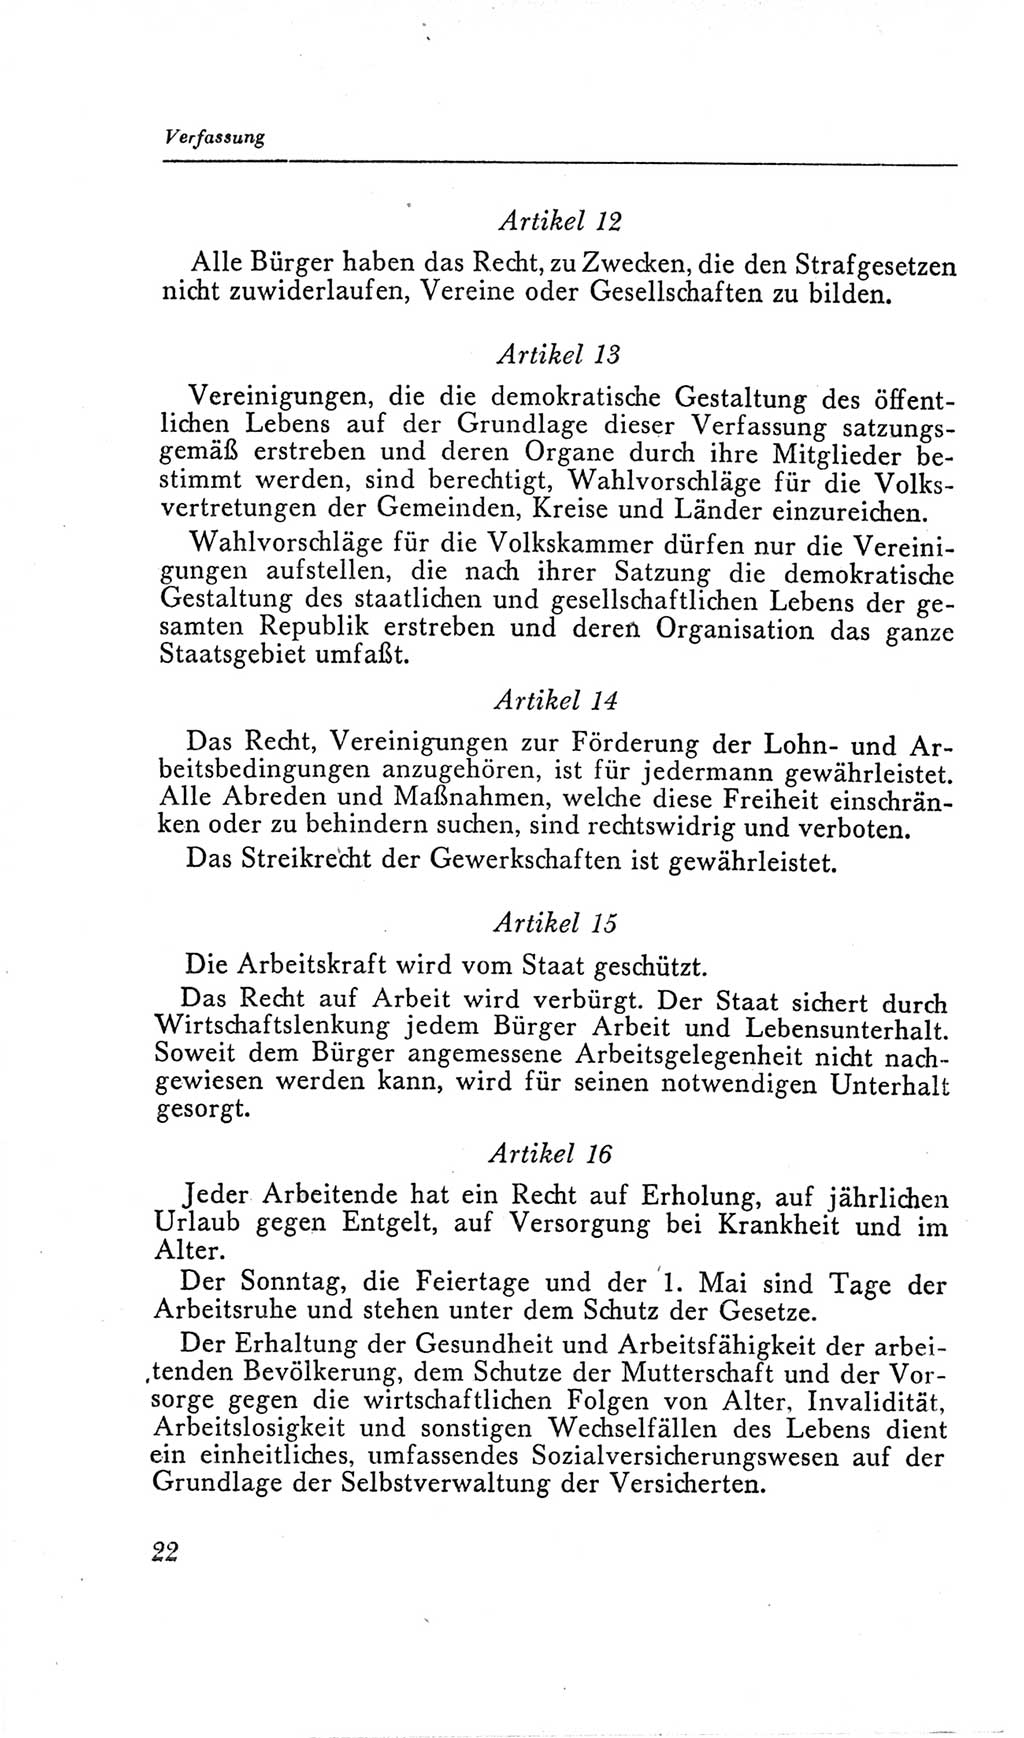 Handbuch der Volkskammer (VK) der Deutschen Demokratischen Republik (DDR), 2. Wahlperiode 1954-1958, Seite 22 (Hdb. VK. DDR, 2. WP. 1954-1958, S. 22)